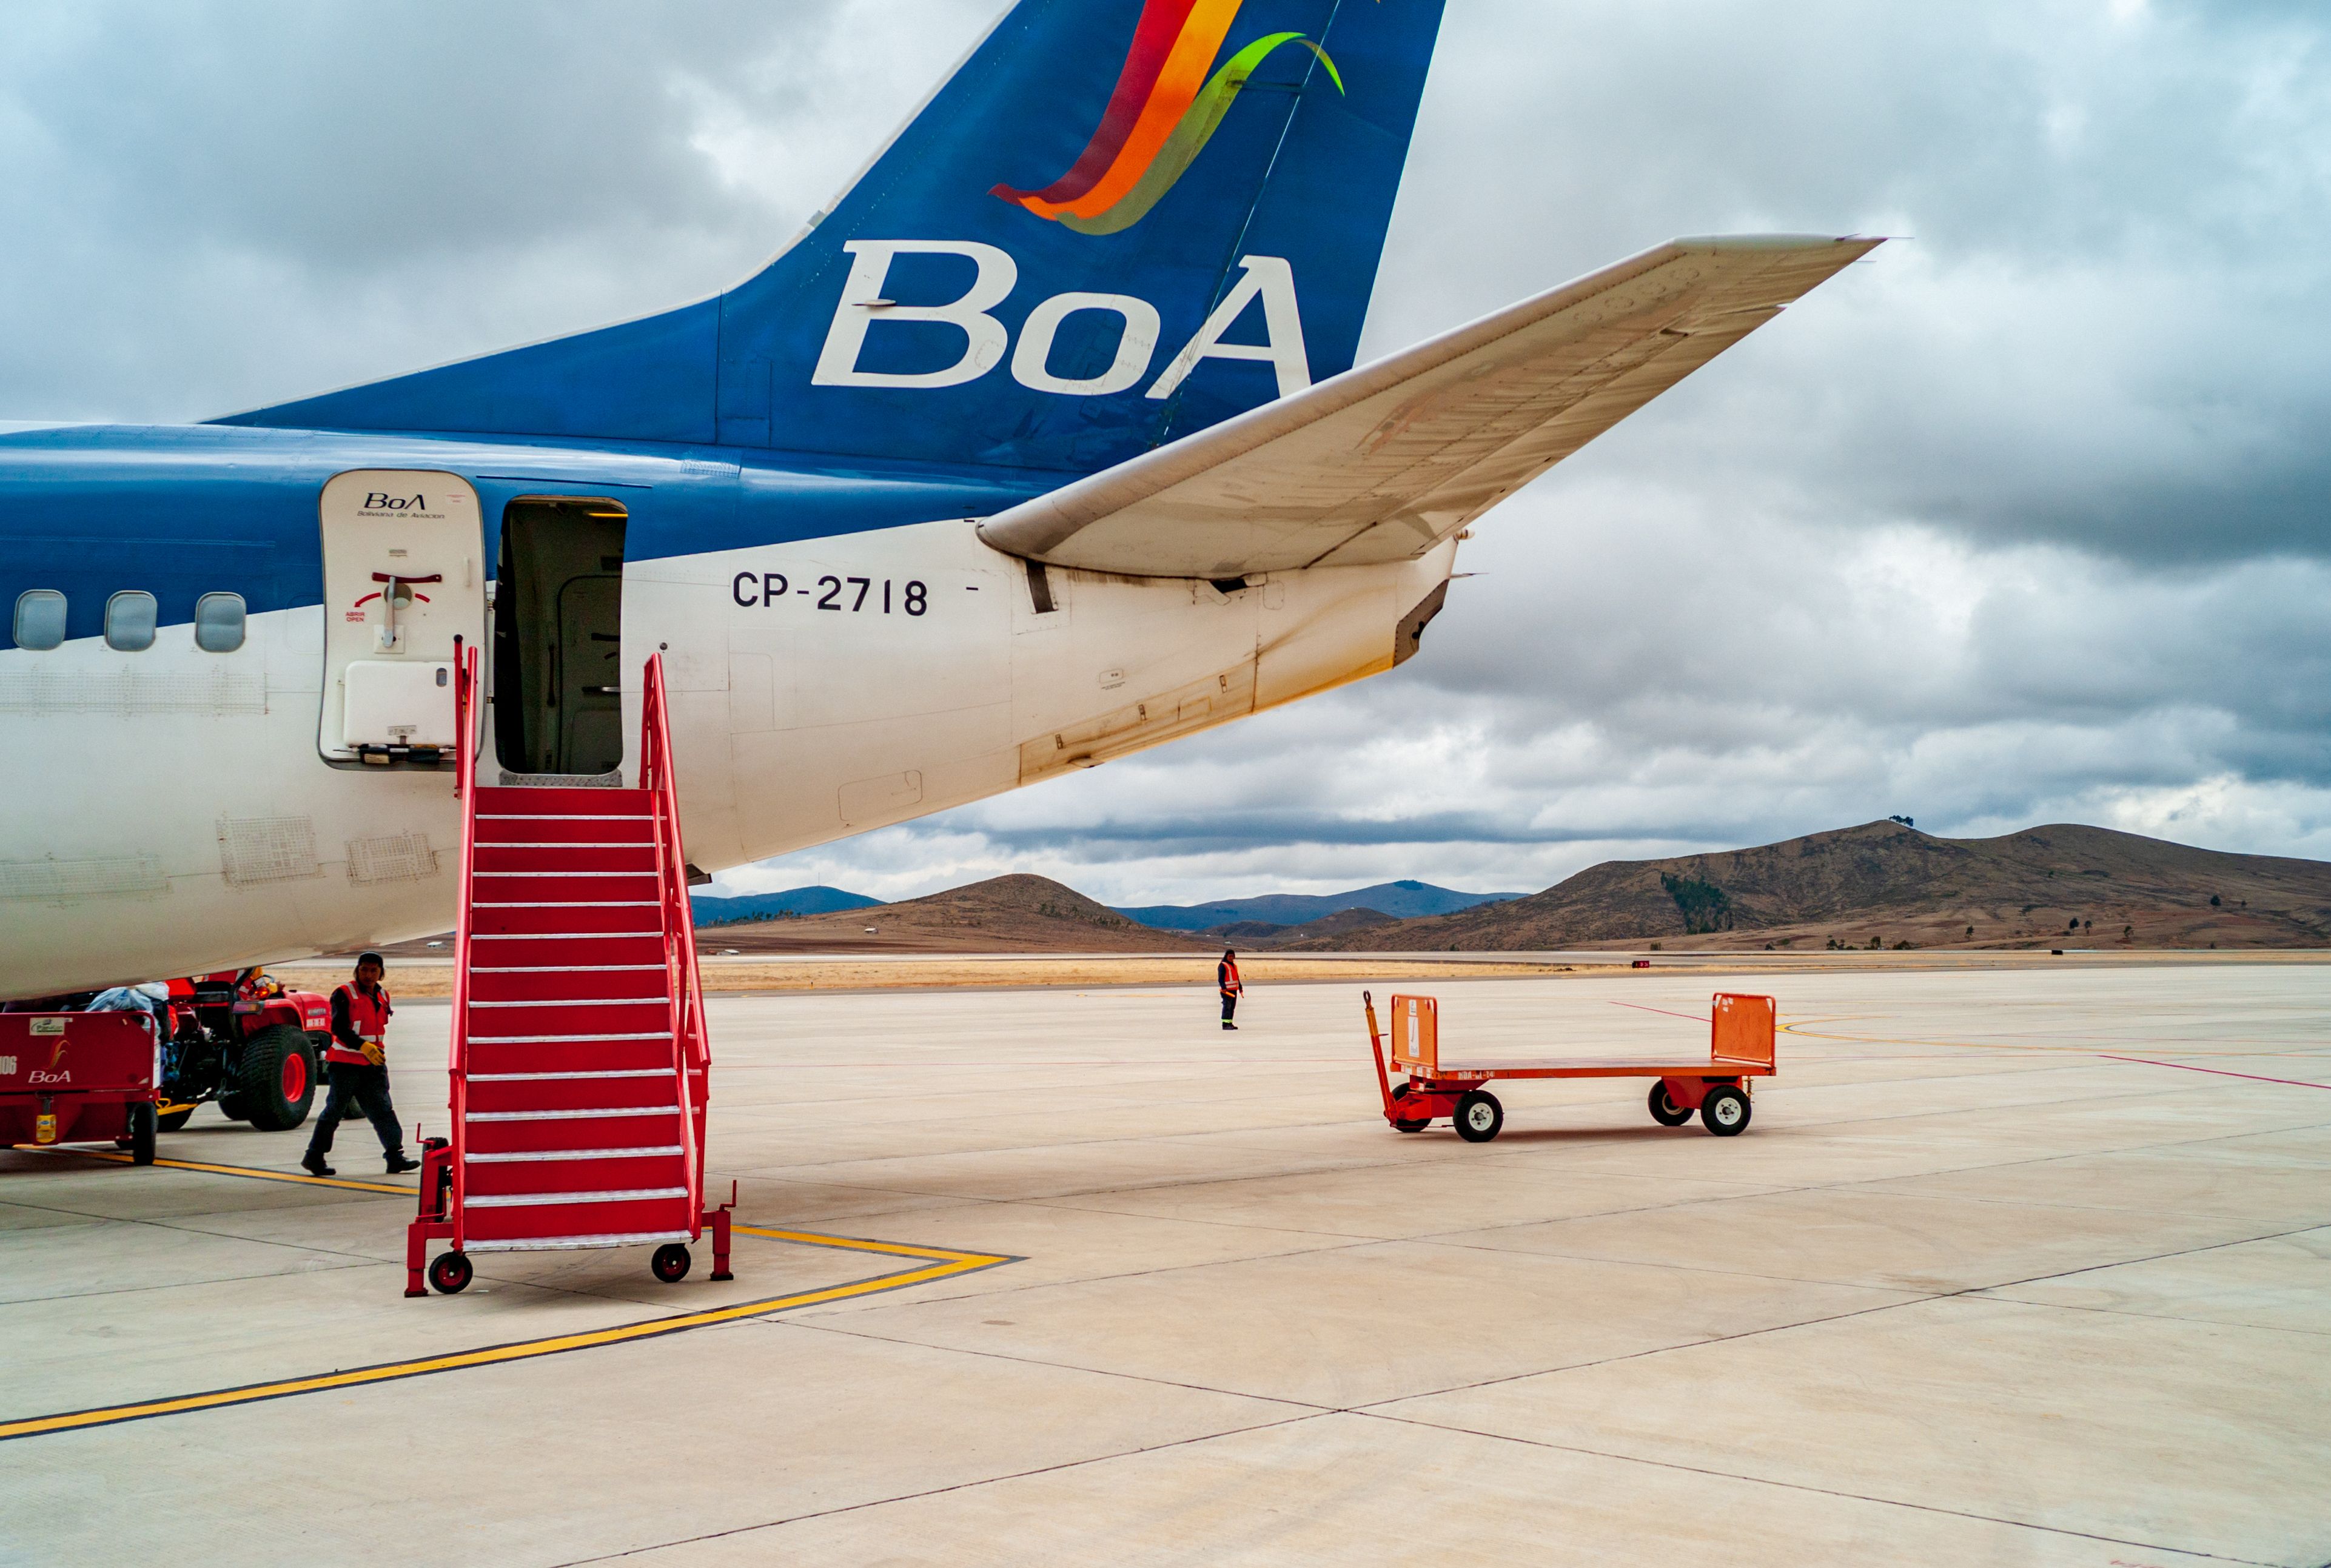 Boliviana de Aviacion at El Alto Airport